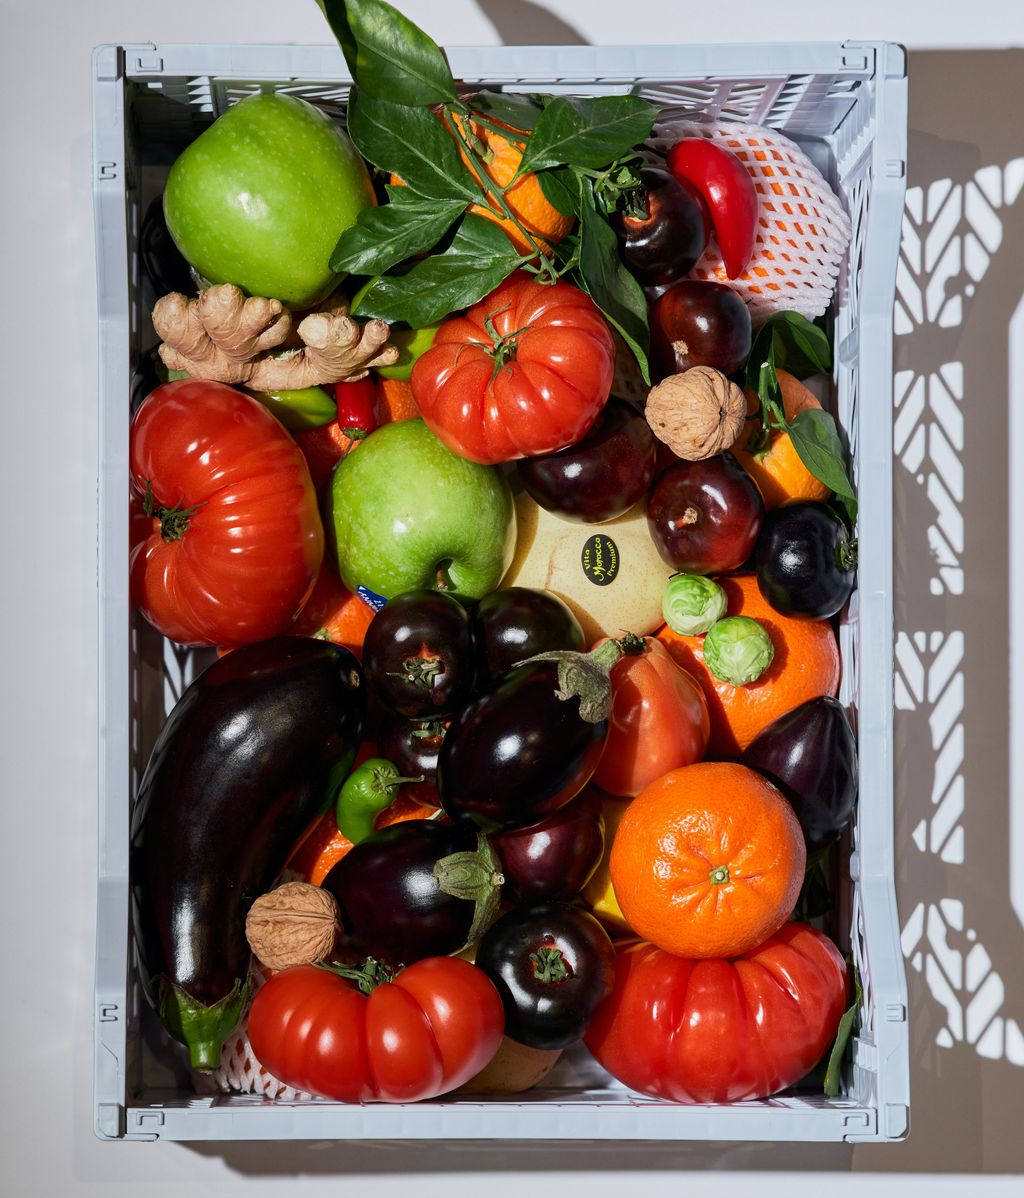 Las frutas y hortalizas son la base de una buena alimentación. FUENTE: Pexels